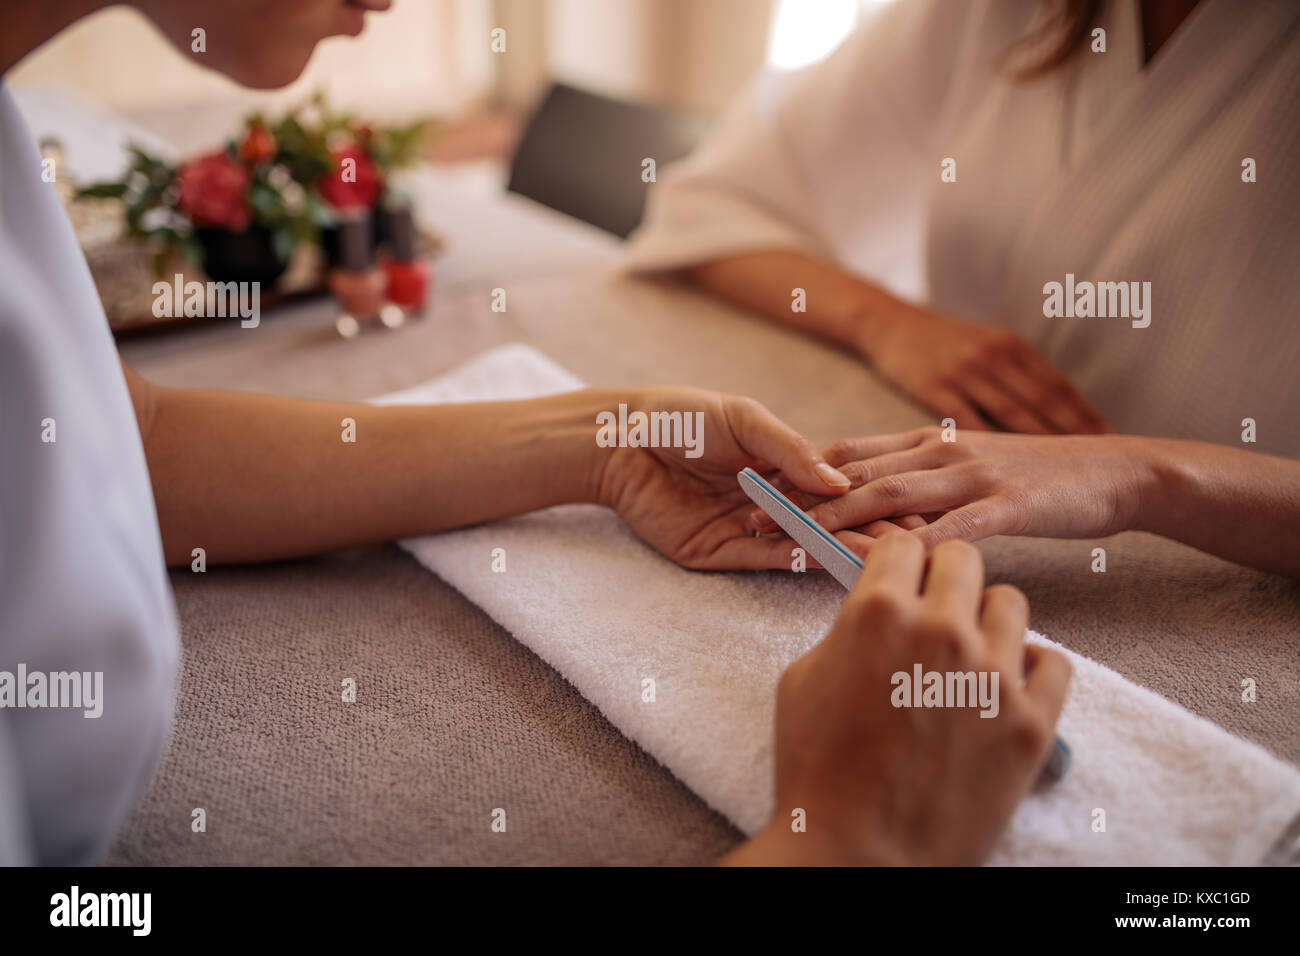 Le mani di qualificati manicurist deposito le unghie della donna client con un tampone bianco in manicure. Concentrarsi sulle mani di manicurist chiodi di sagomatura delle donne Foto Stock